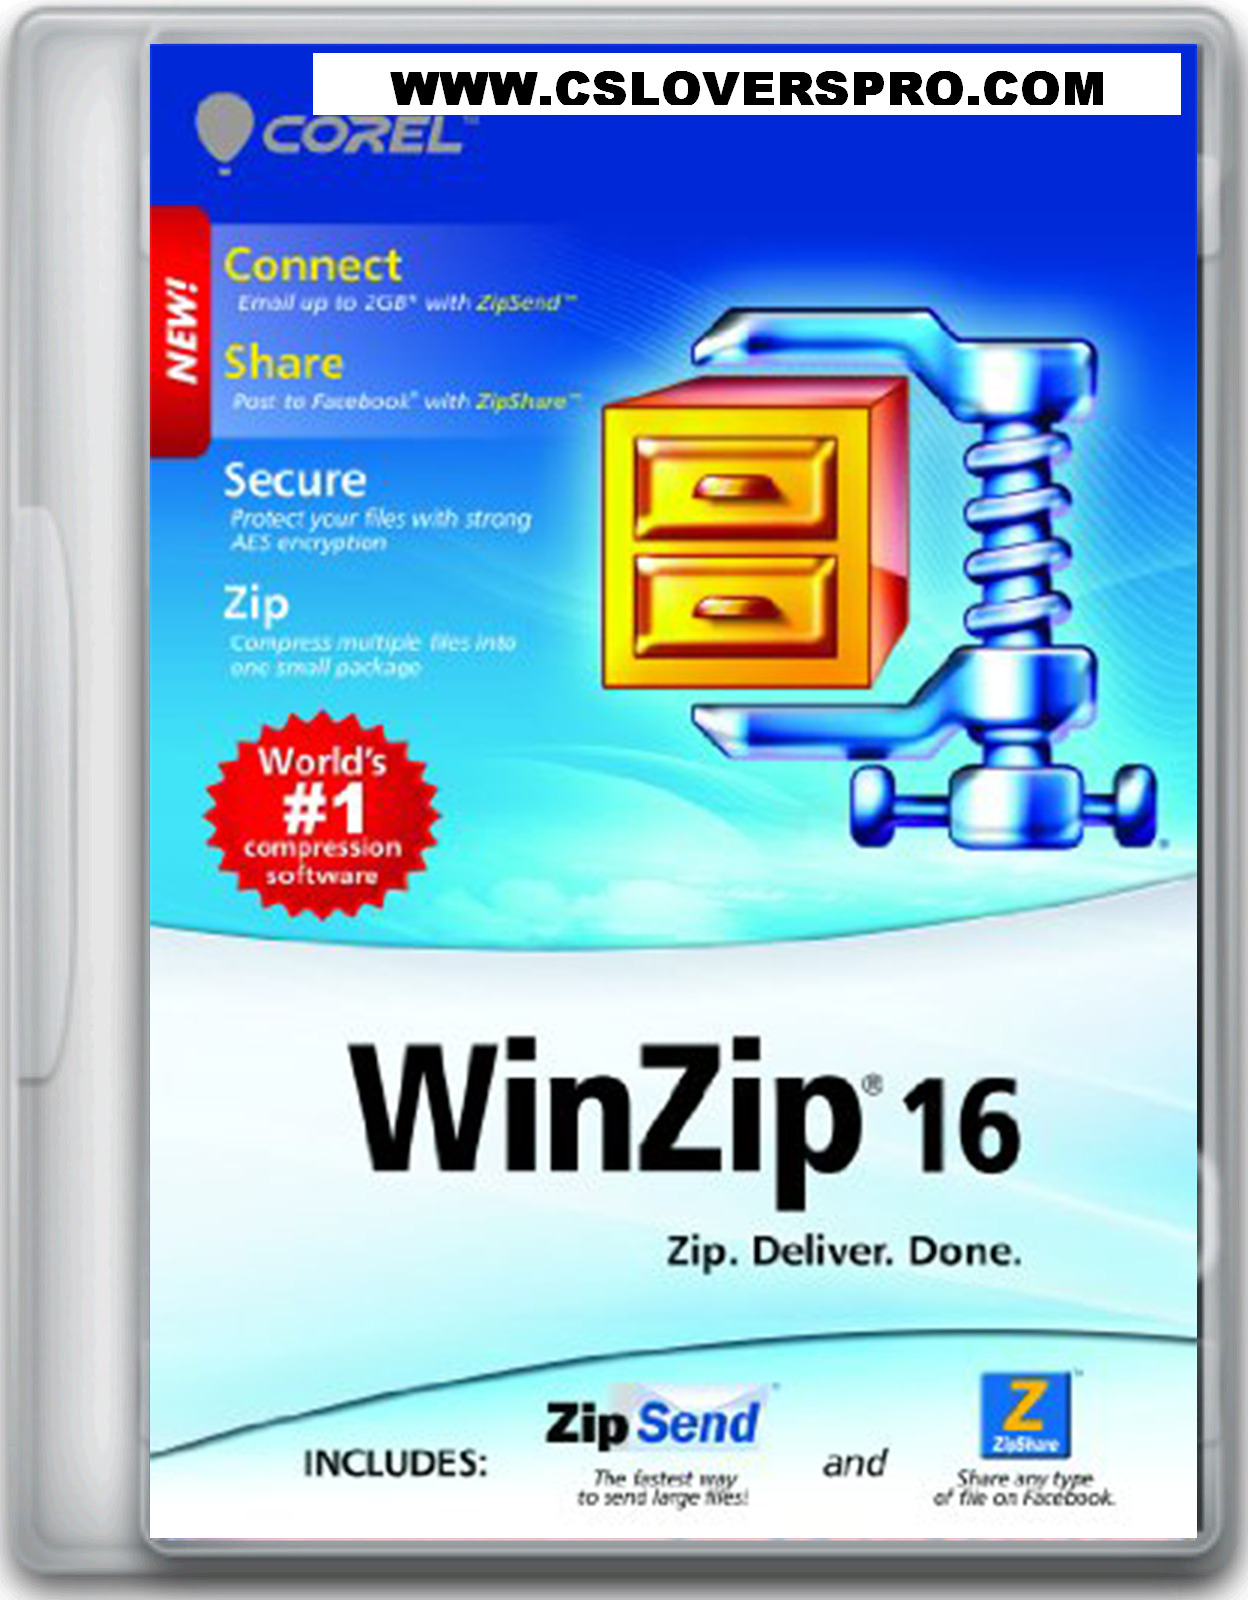 winzip 16.5 activation code free download